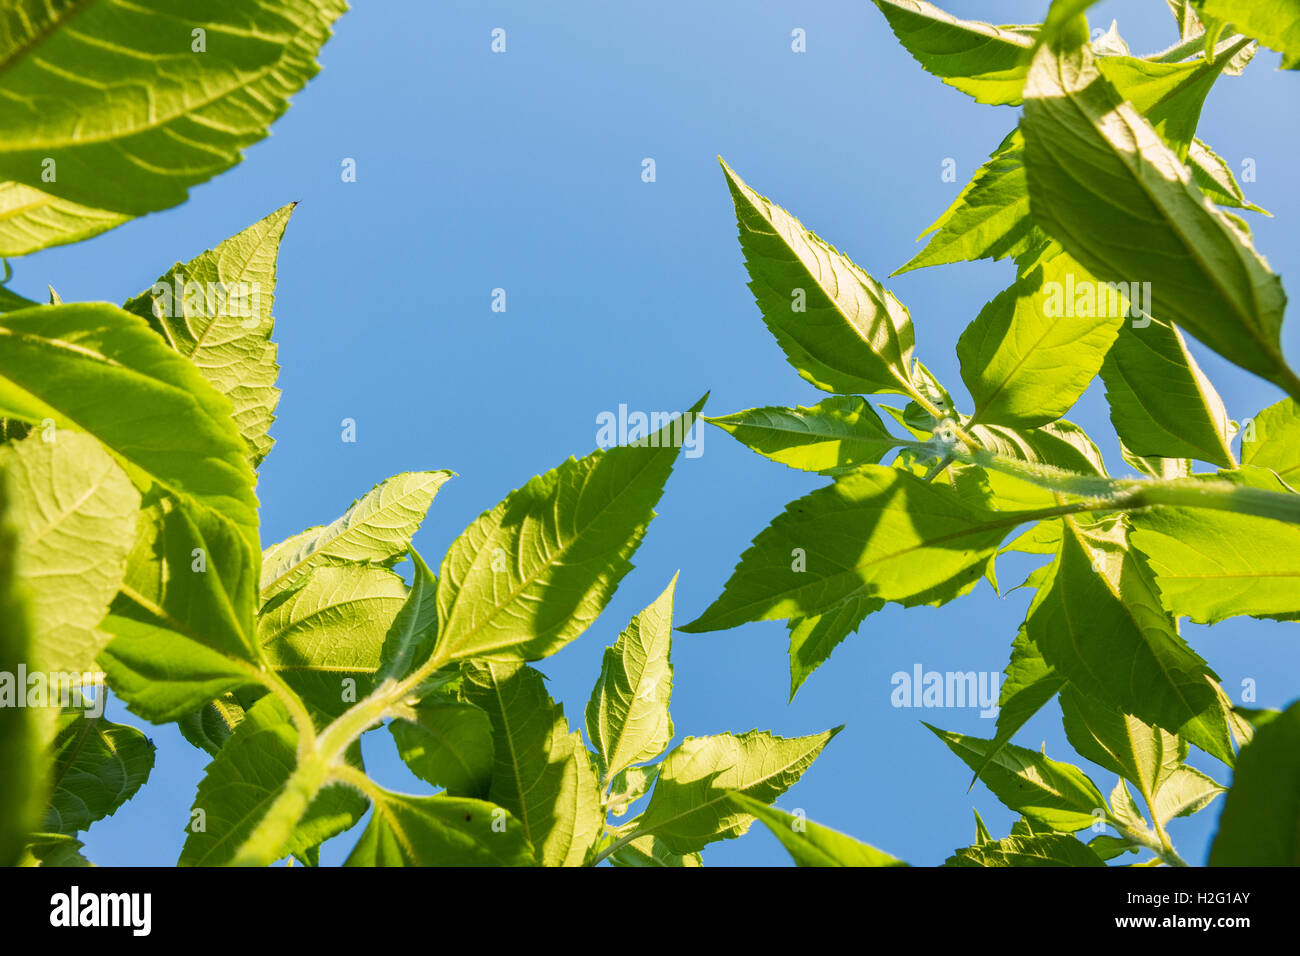 Frische grüne Blätter am Baum und blauer Himmel. Sommer-Natur-Szene zeigen Wachstum. Stockfoto